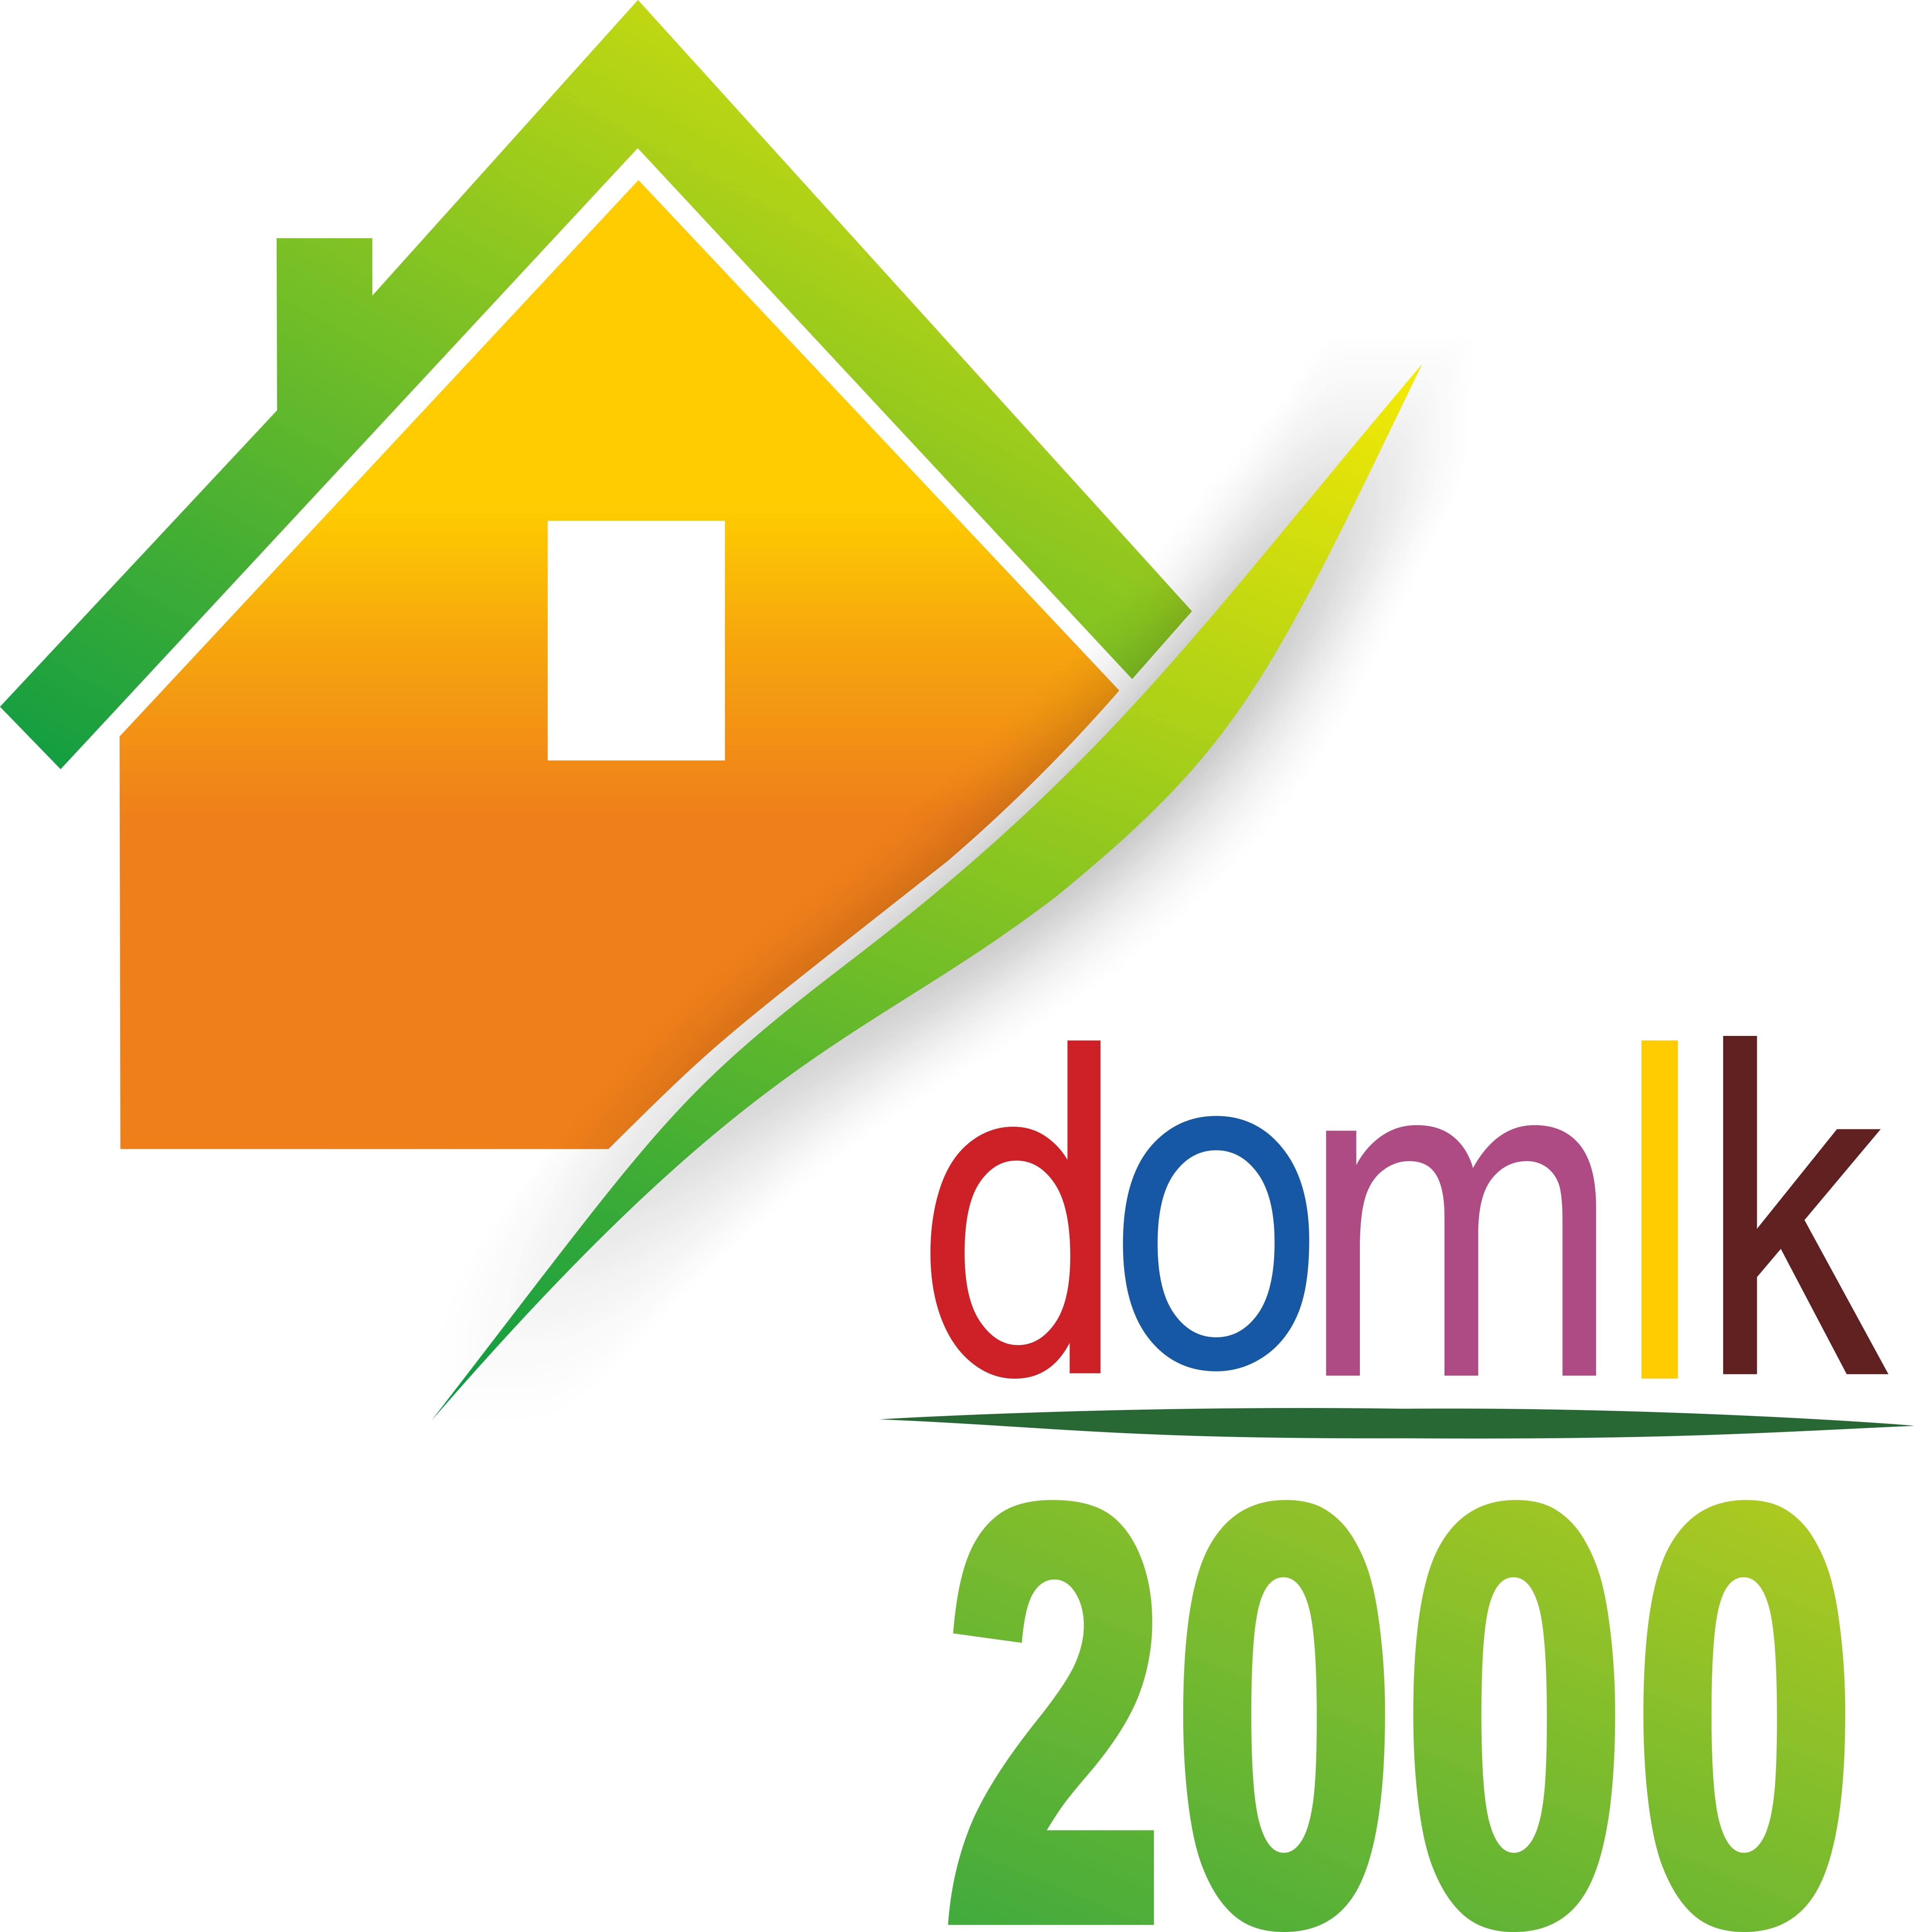 СУПЕРМАРКЕТ ДОМИК2000 основан в 2000 году